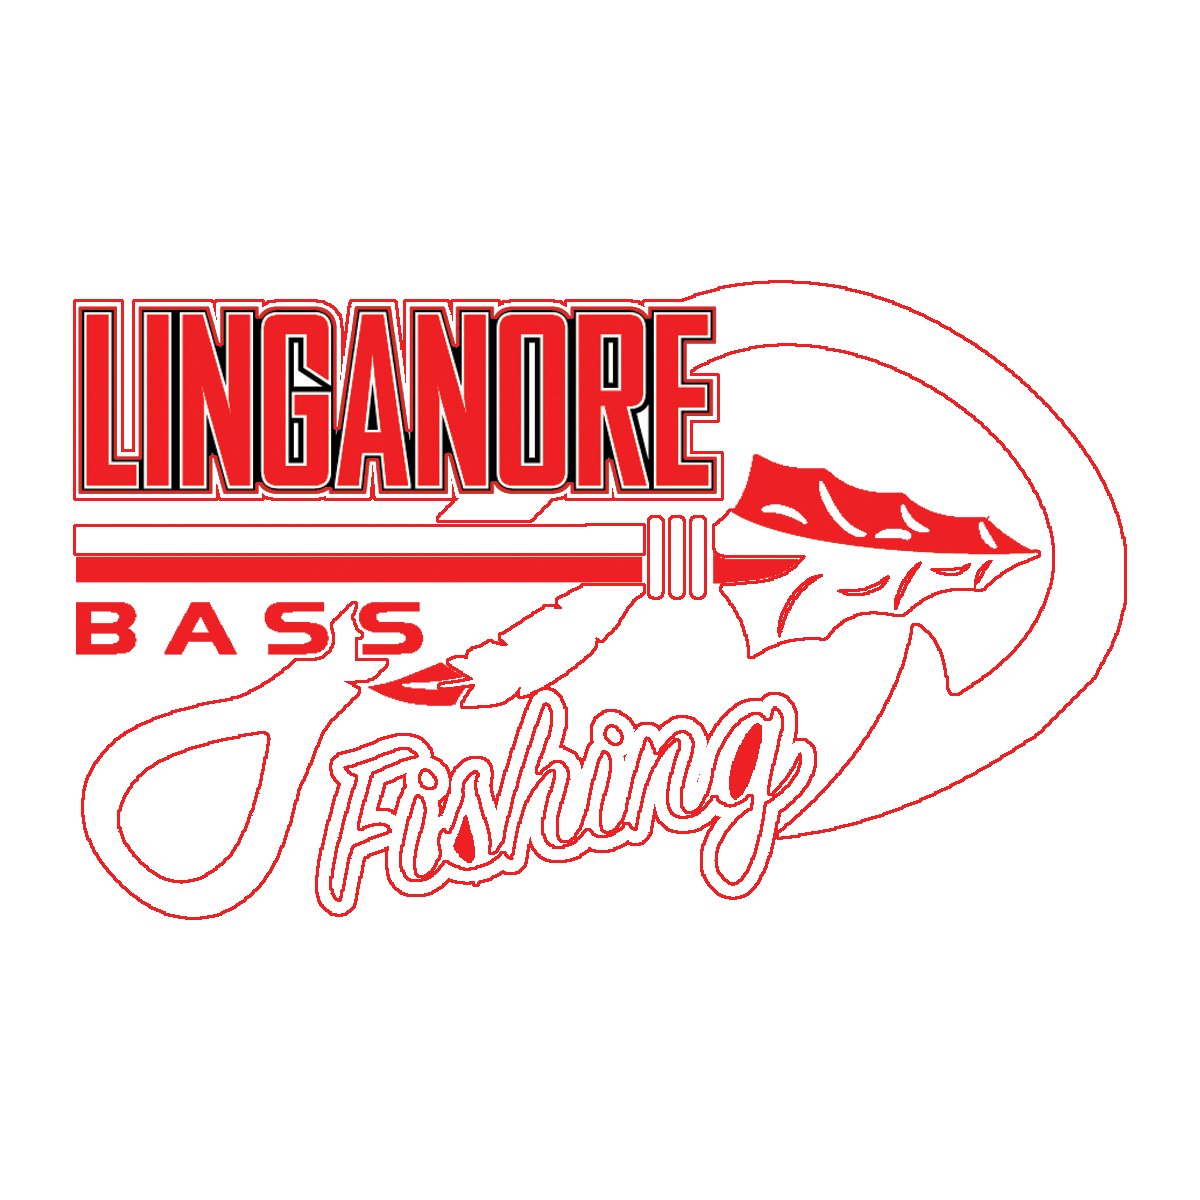 Linganore Bass Fishing Team Store